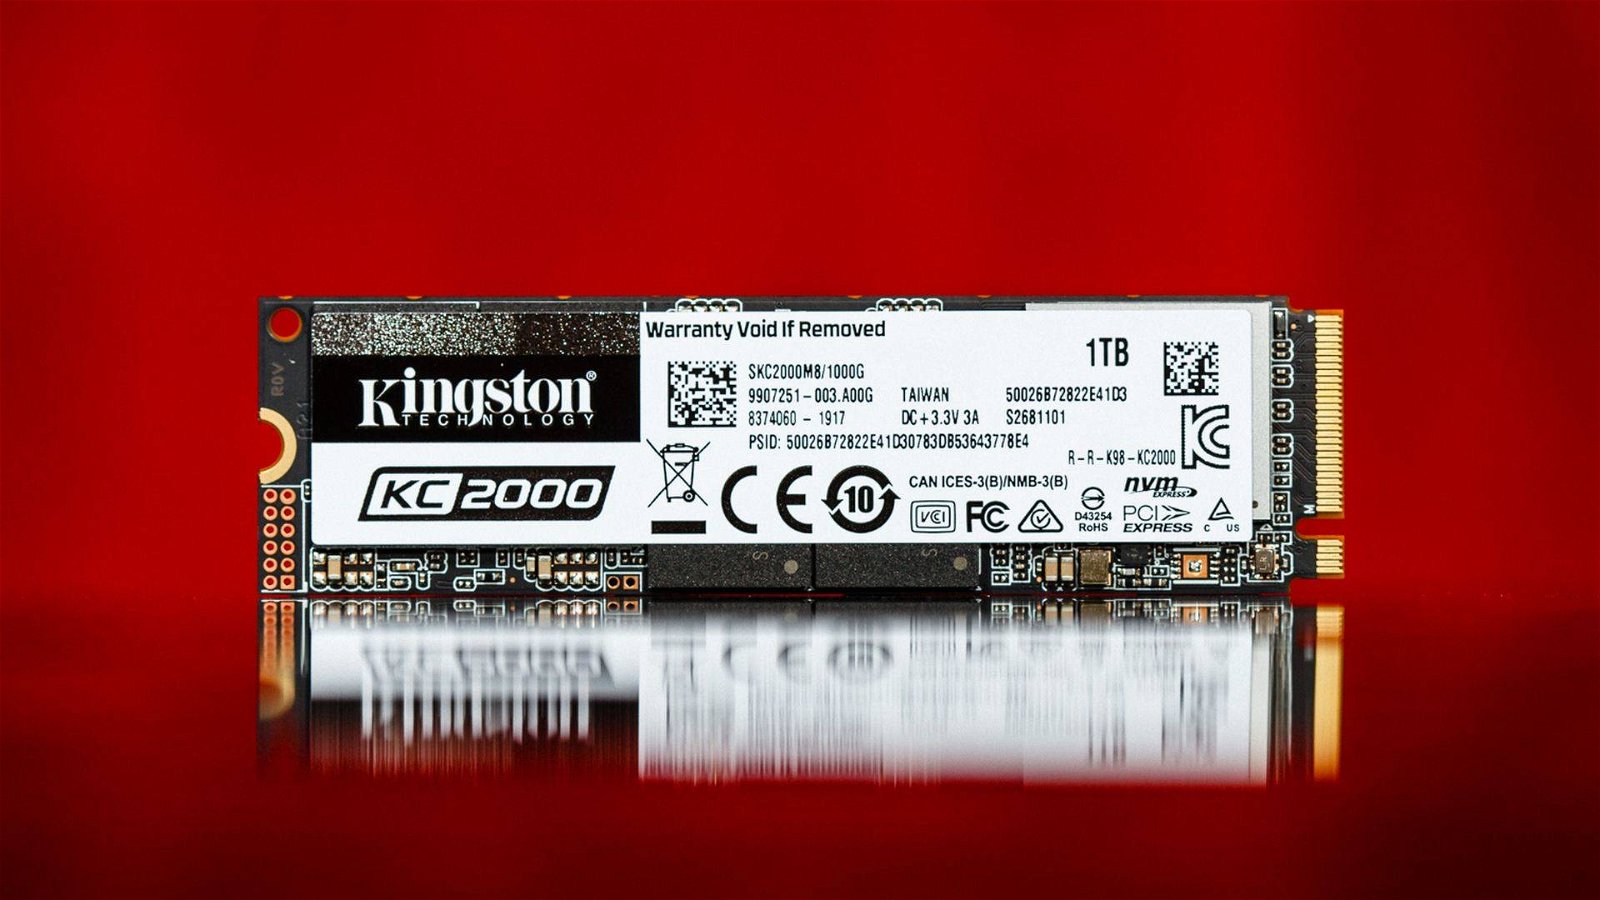 Immagine di Kingston KC2000, nuovi SSD M.2 con memoria 3D NAND a 96 layer